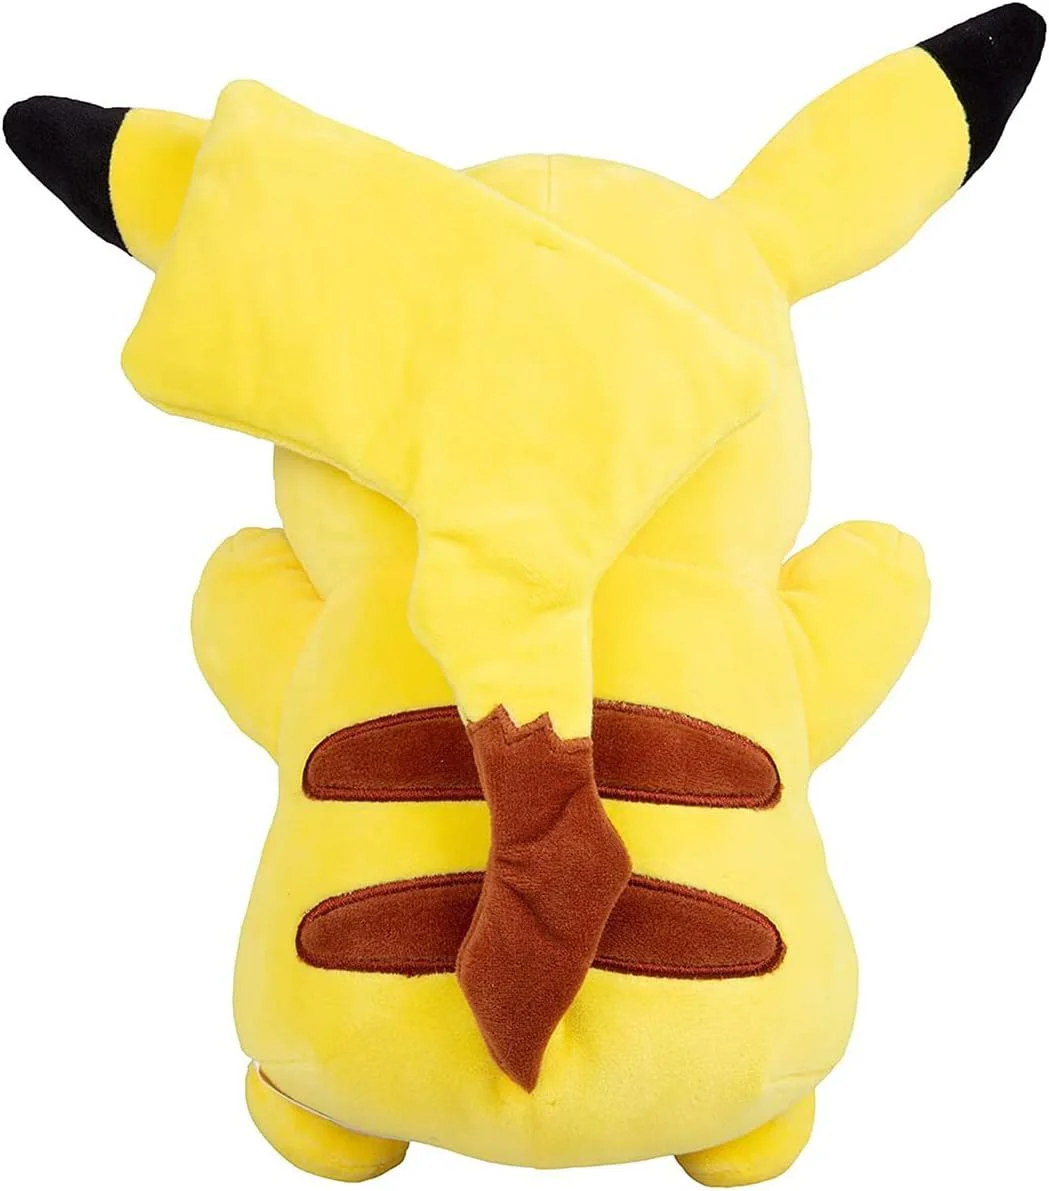 Мягкая игрушка Pokemon Пикачу, 30 см